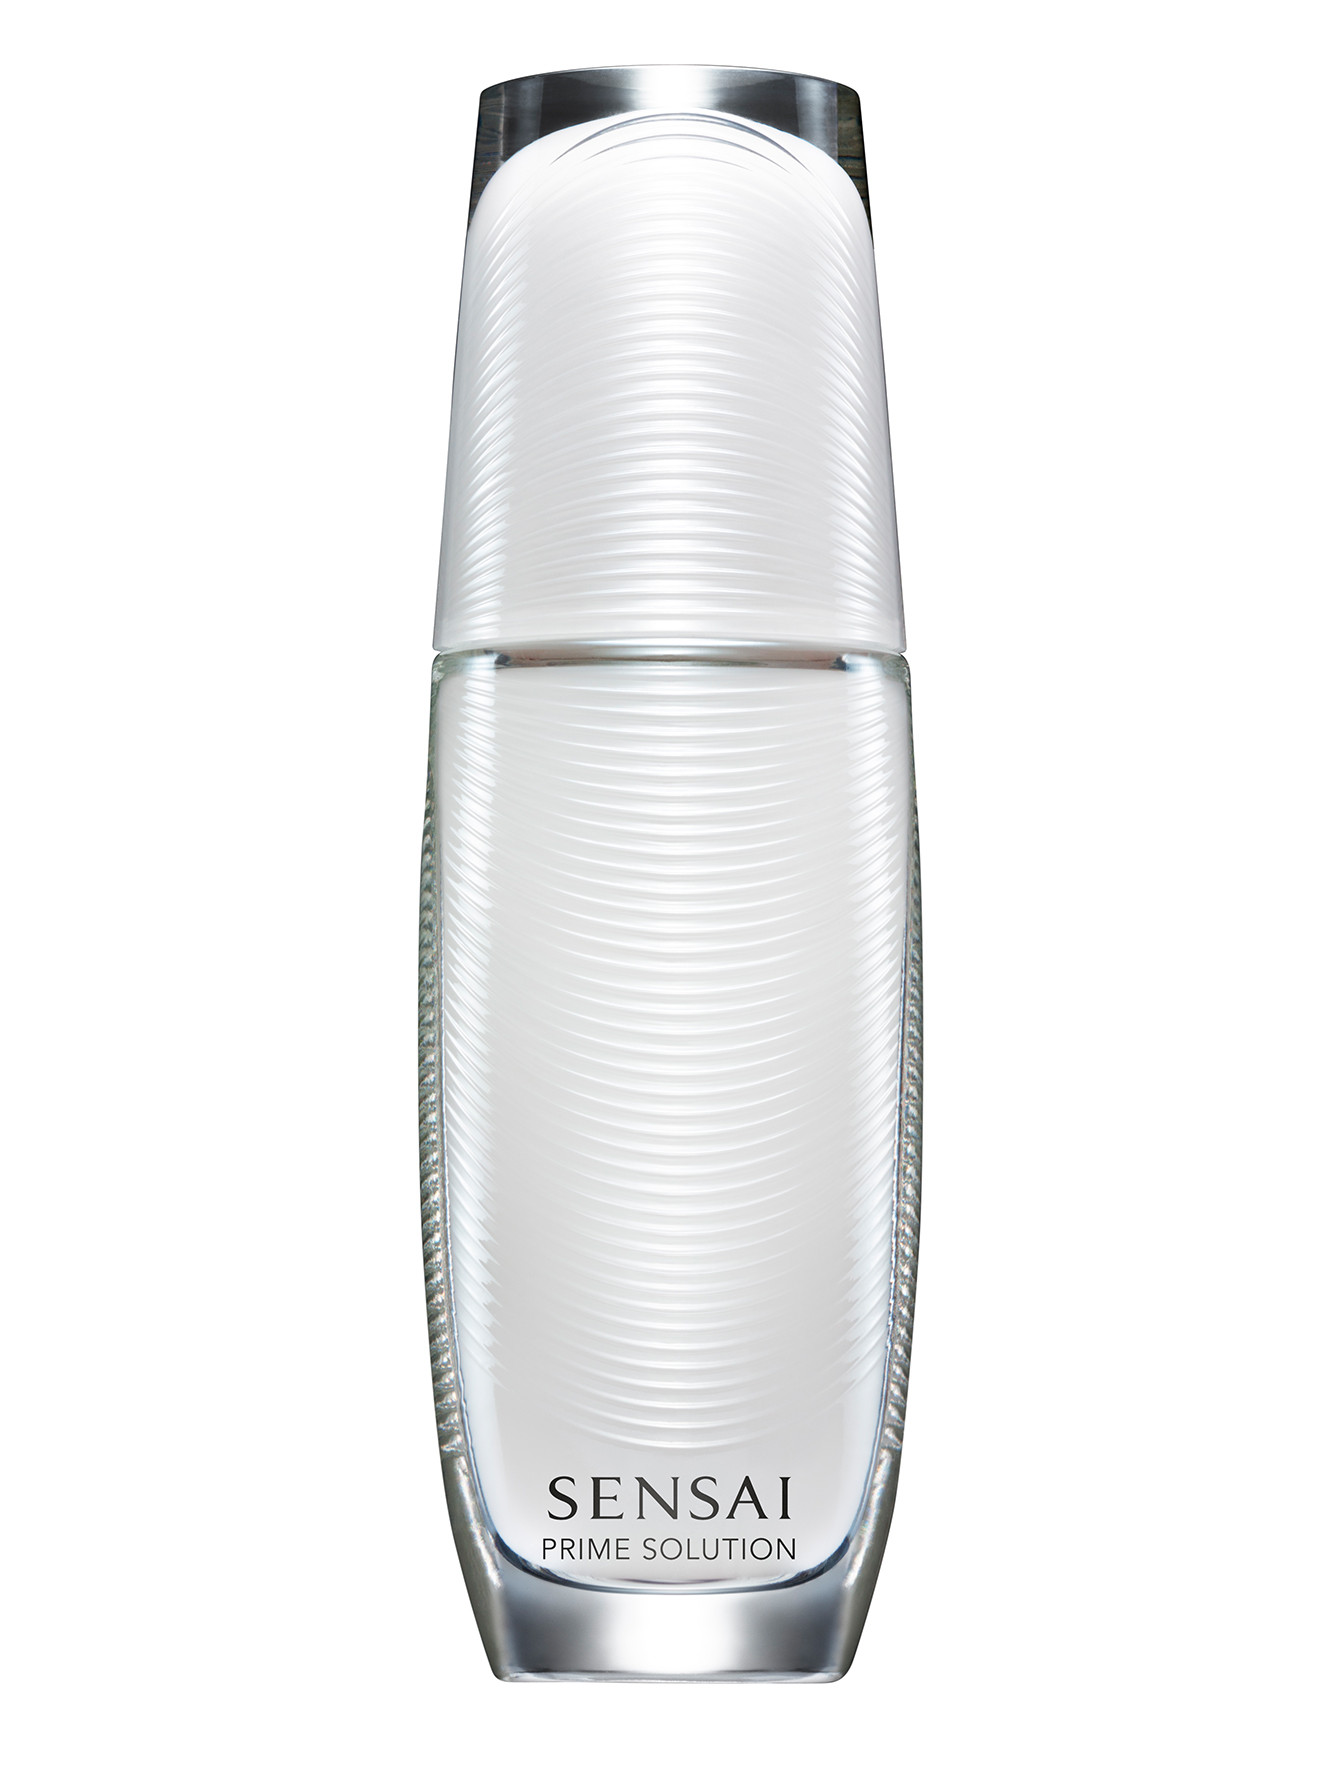  Флюид  для лица - Sensai Cellular Perfomance, 75ml - Общий вид